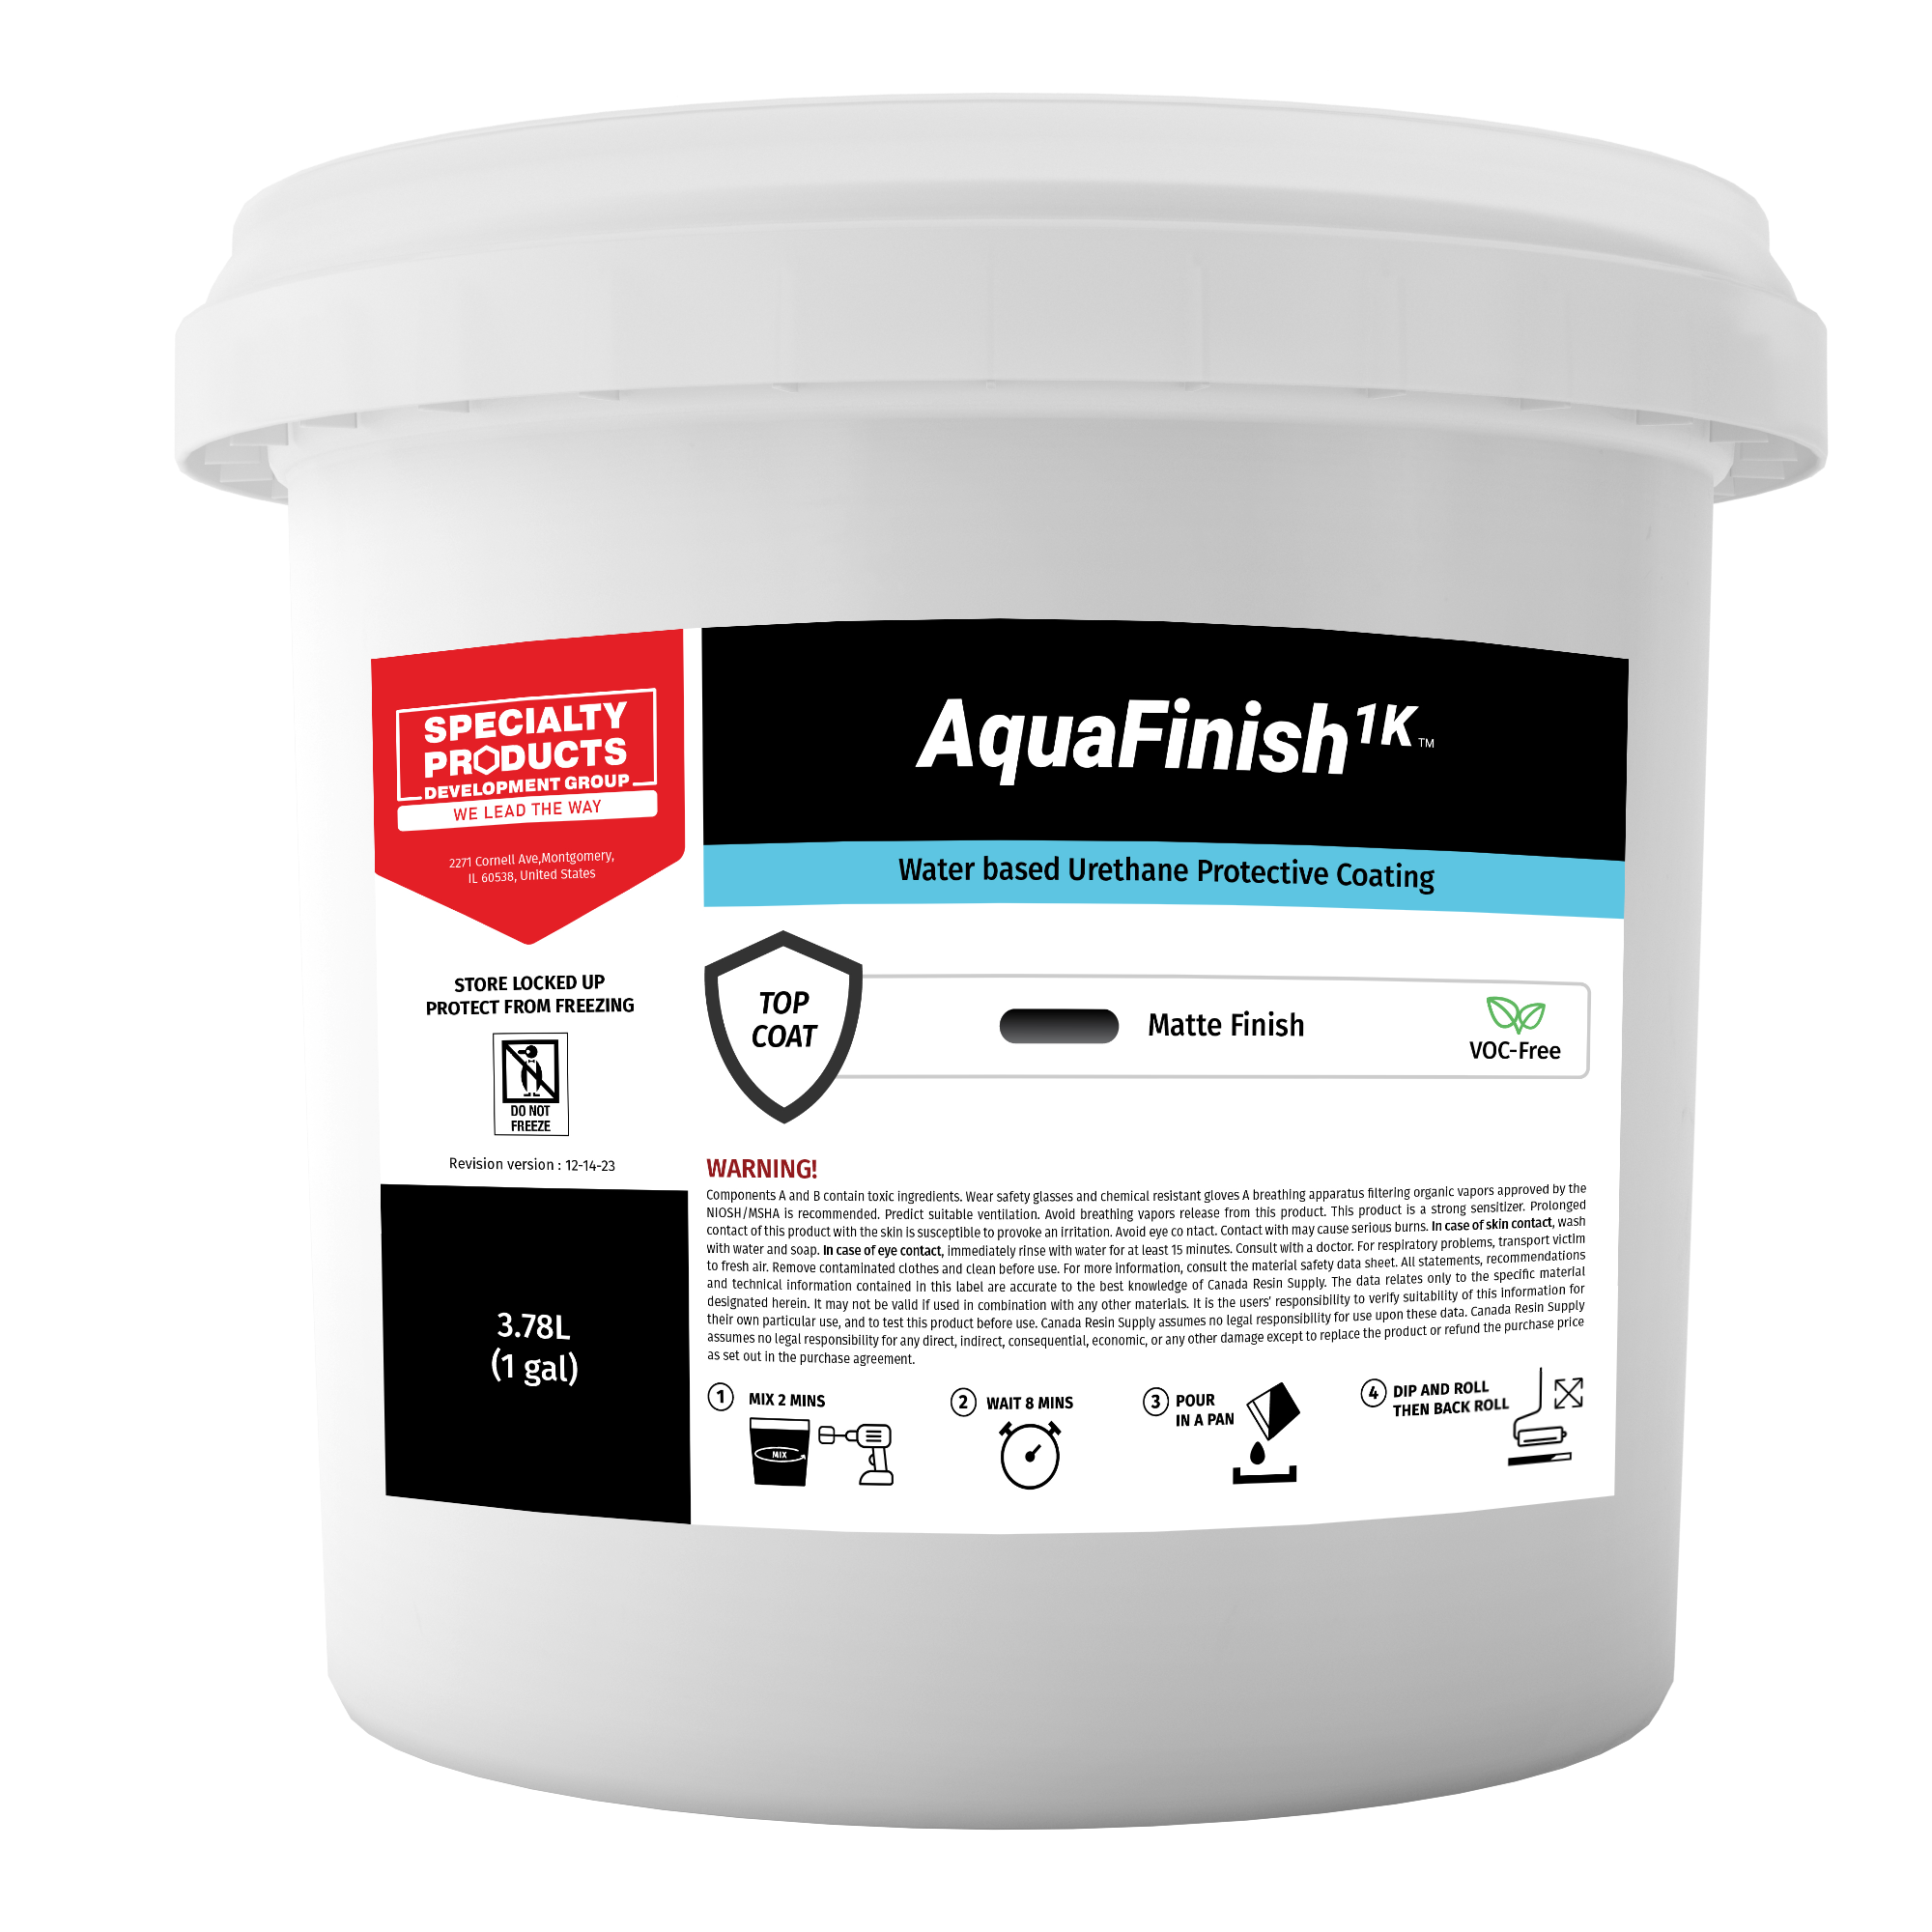 AquaFinish 1K ™ Water based Urethane Protective Coating 1 GAL - 0